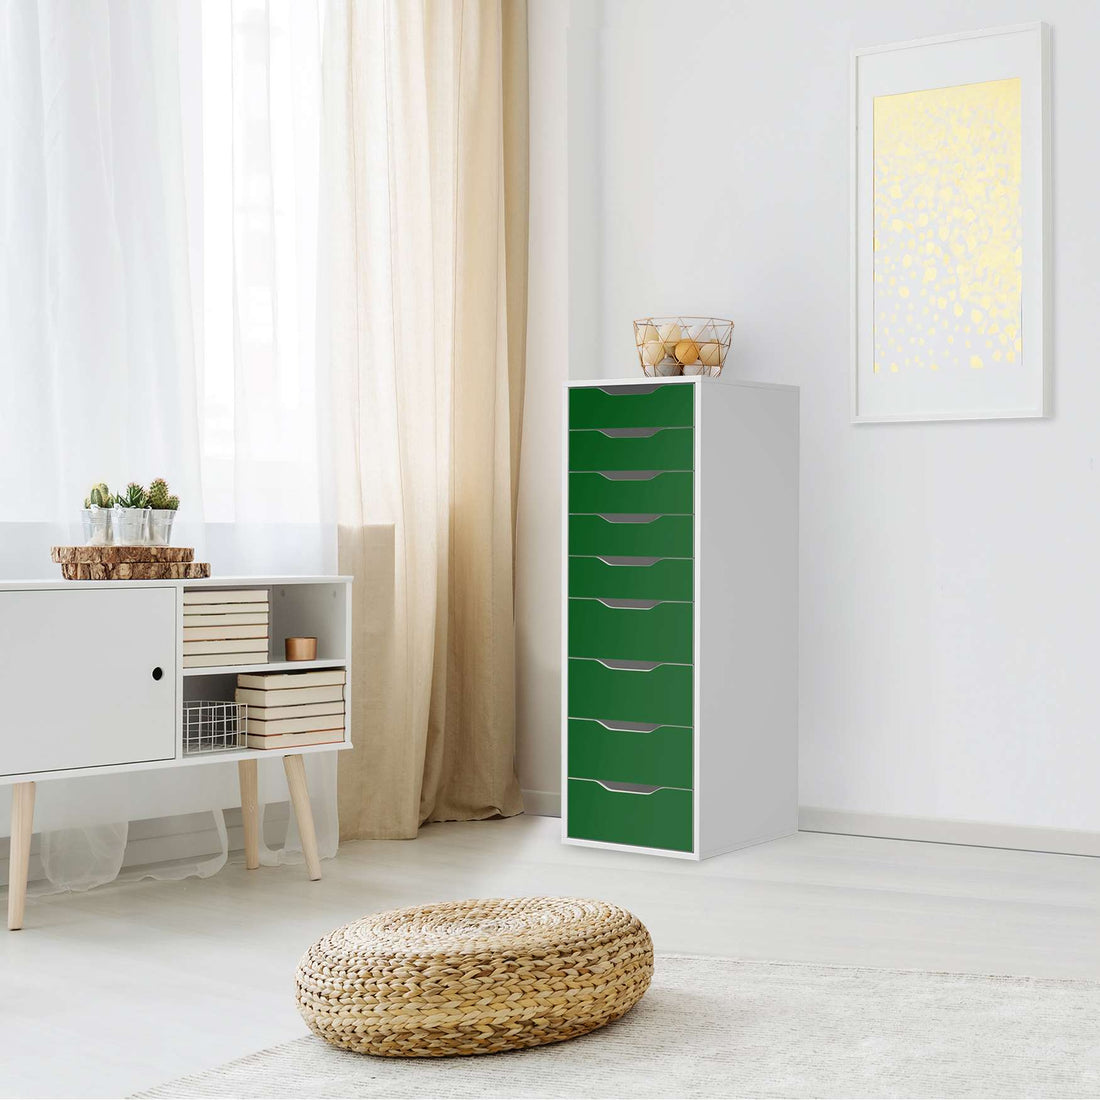 Folie für Möbel Grün Dark - IKEA Alex 9 Schubladen - Wohnzimmer